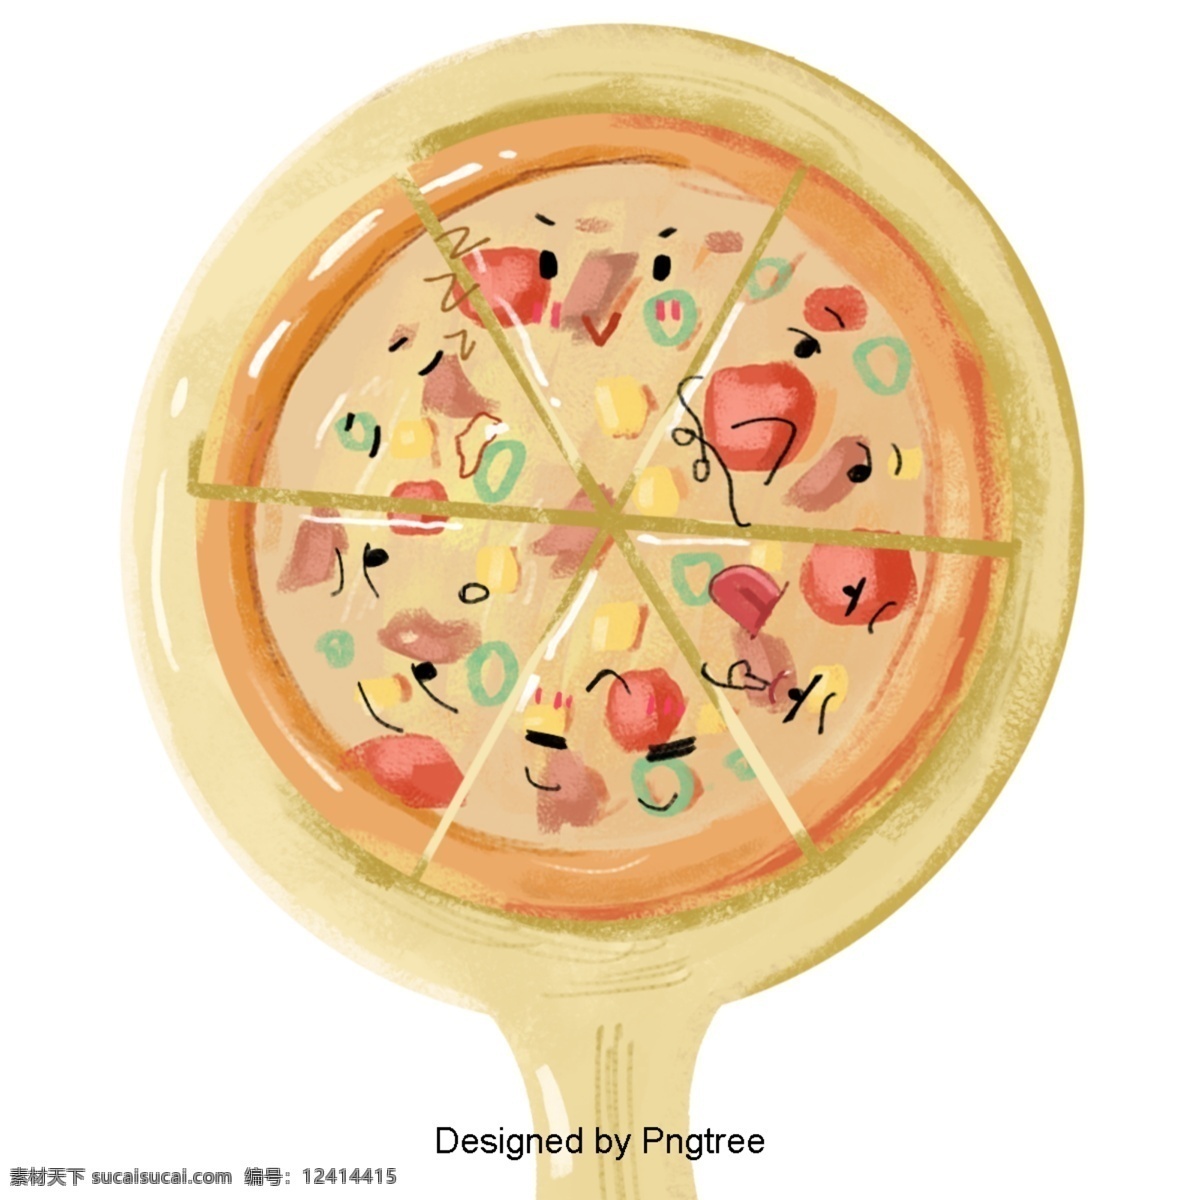 卡通 手绘 食品 艺术 极 简 主义 食物 图标 可爱 绘画 装饰 时尚 元素